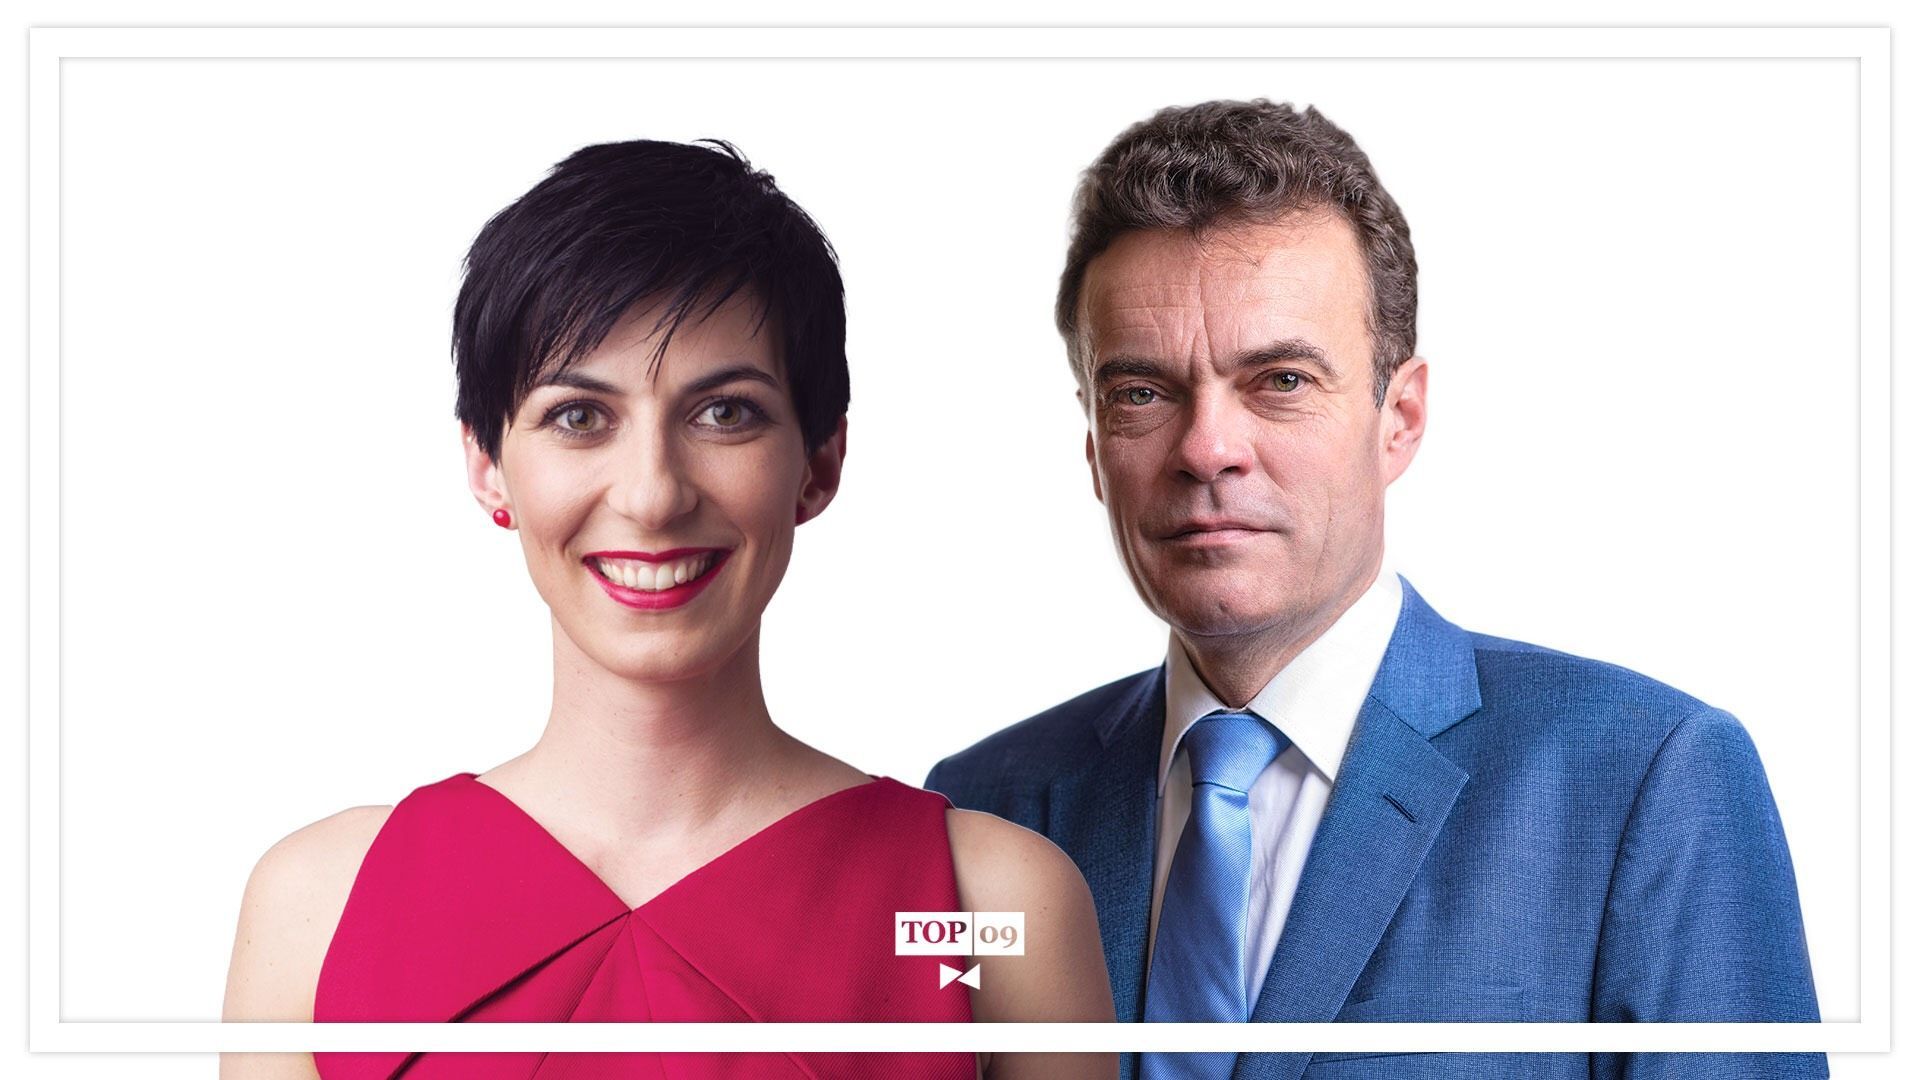 Dva kandidáti na předsedu TOP 09, poslankyně Markéta Pekarová Adamová a senátor Tomáš Czernin